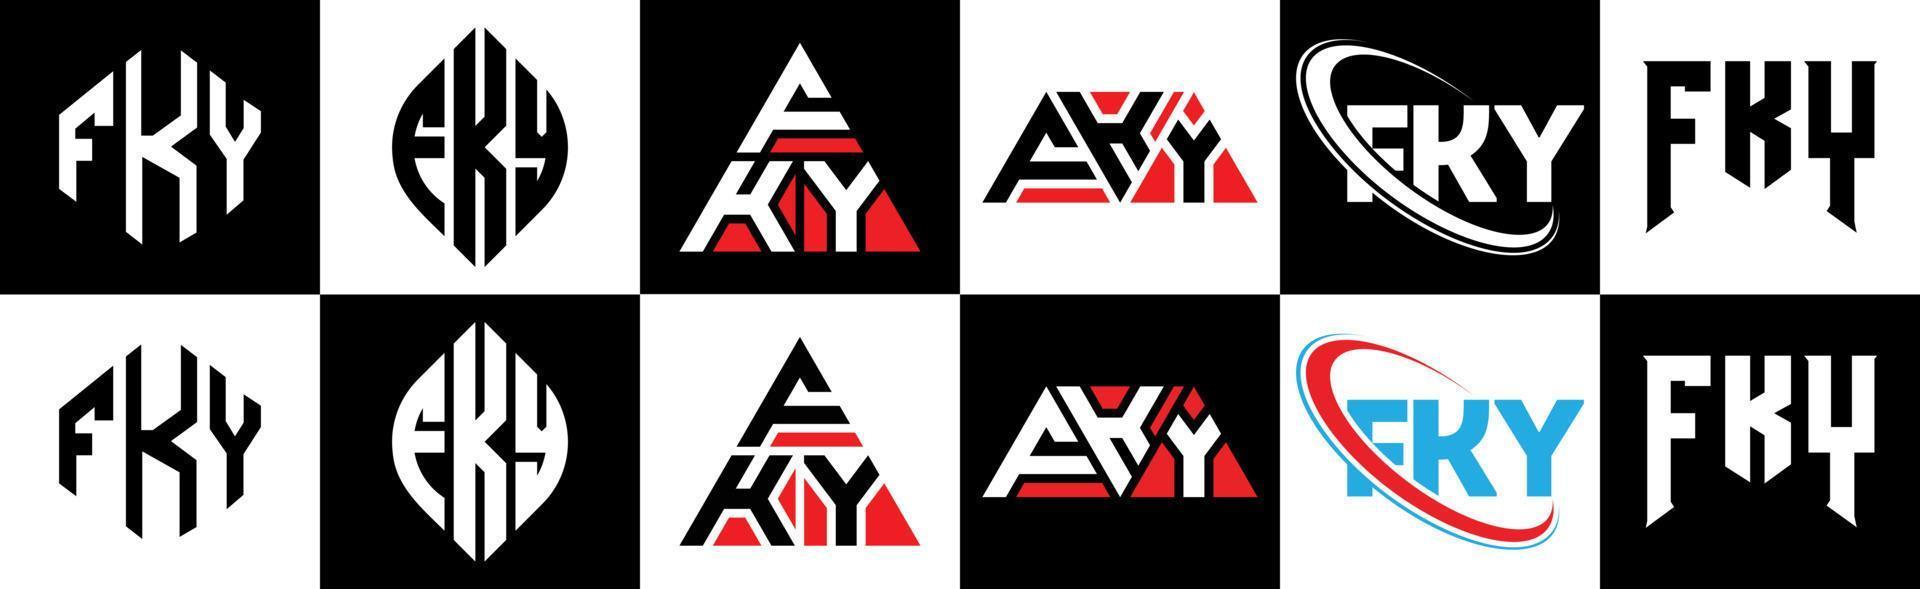 fky-Buchstaben-Logo-Design in sechs Stilen. fky polygon, kreis, dreieck, sechseck, flacher und einfacher stil mit schwarz-weißem buchstabenlogo in einer zeichenfläche. fky minimalistisches und klassisches Logo vektor